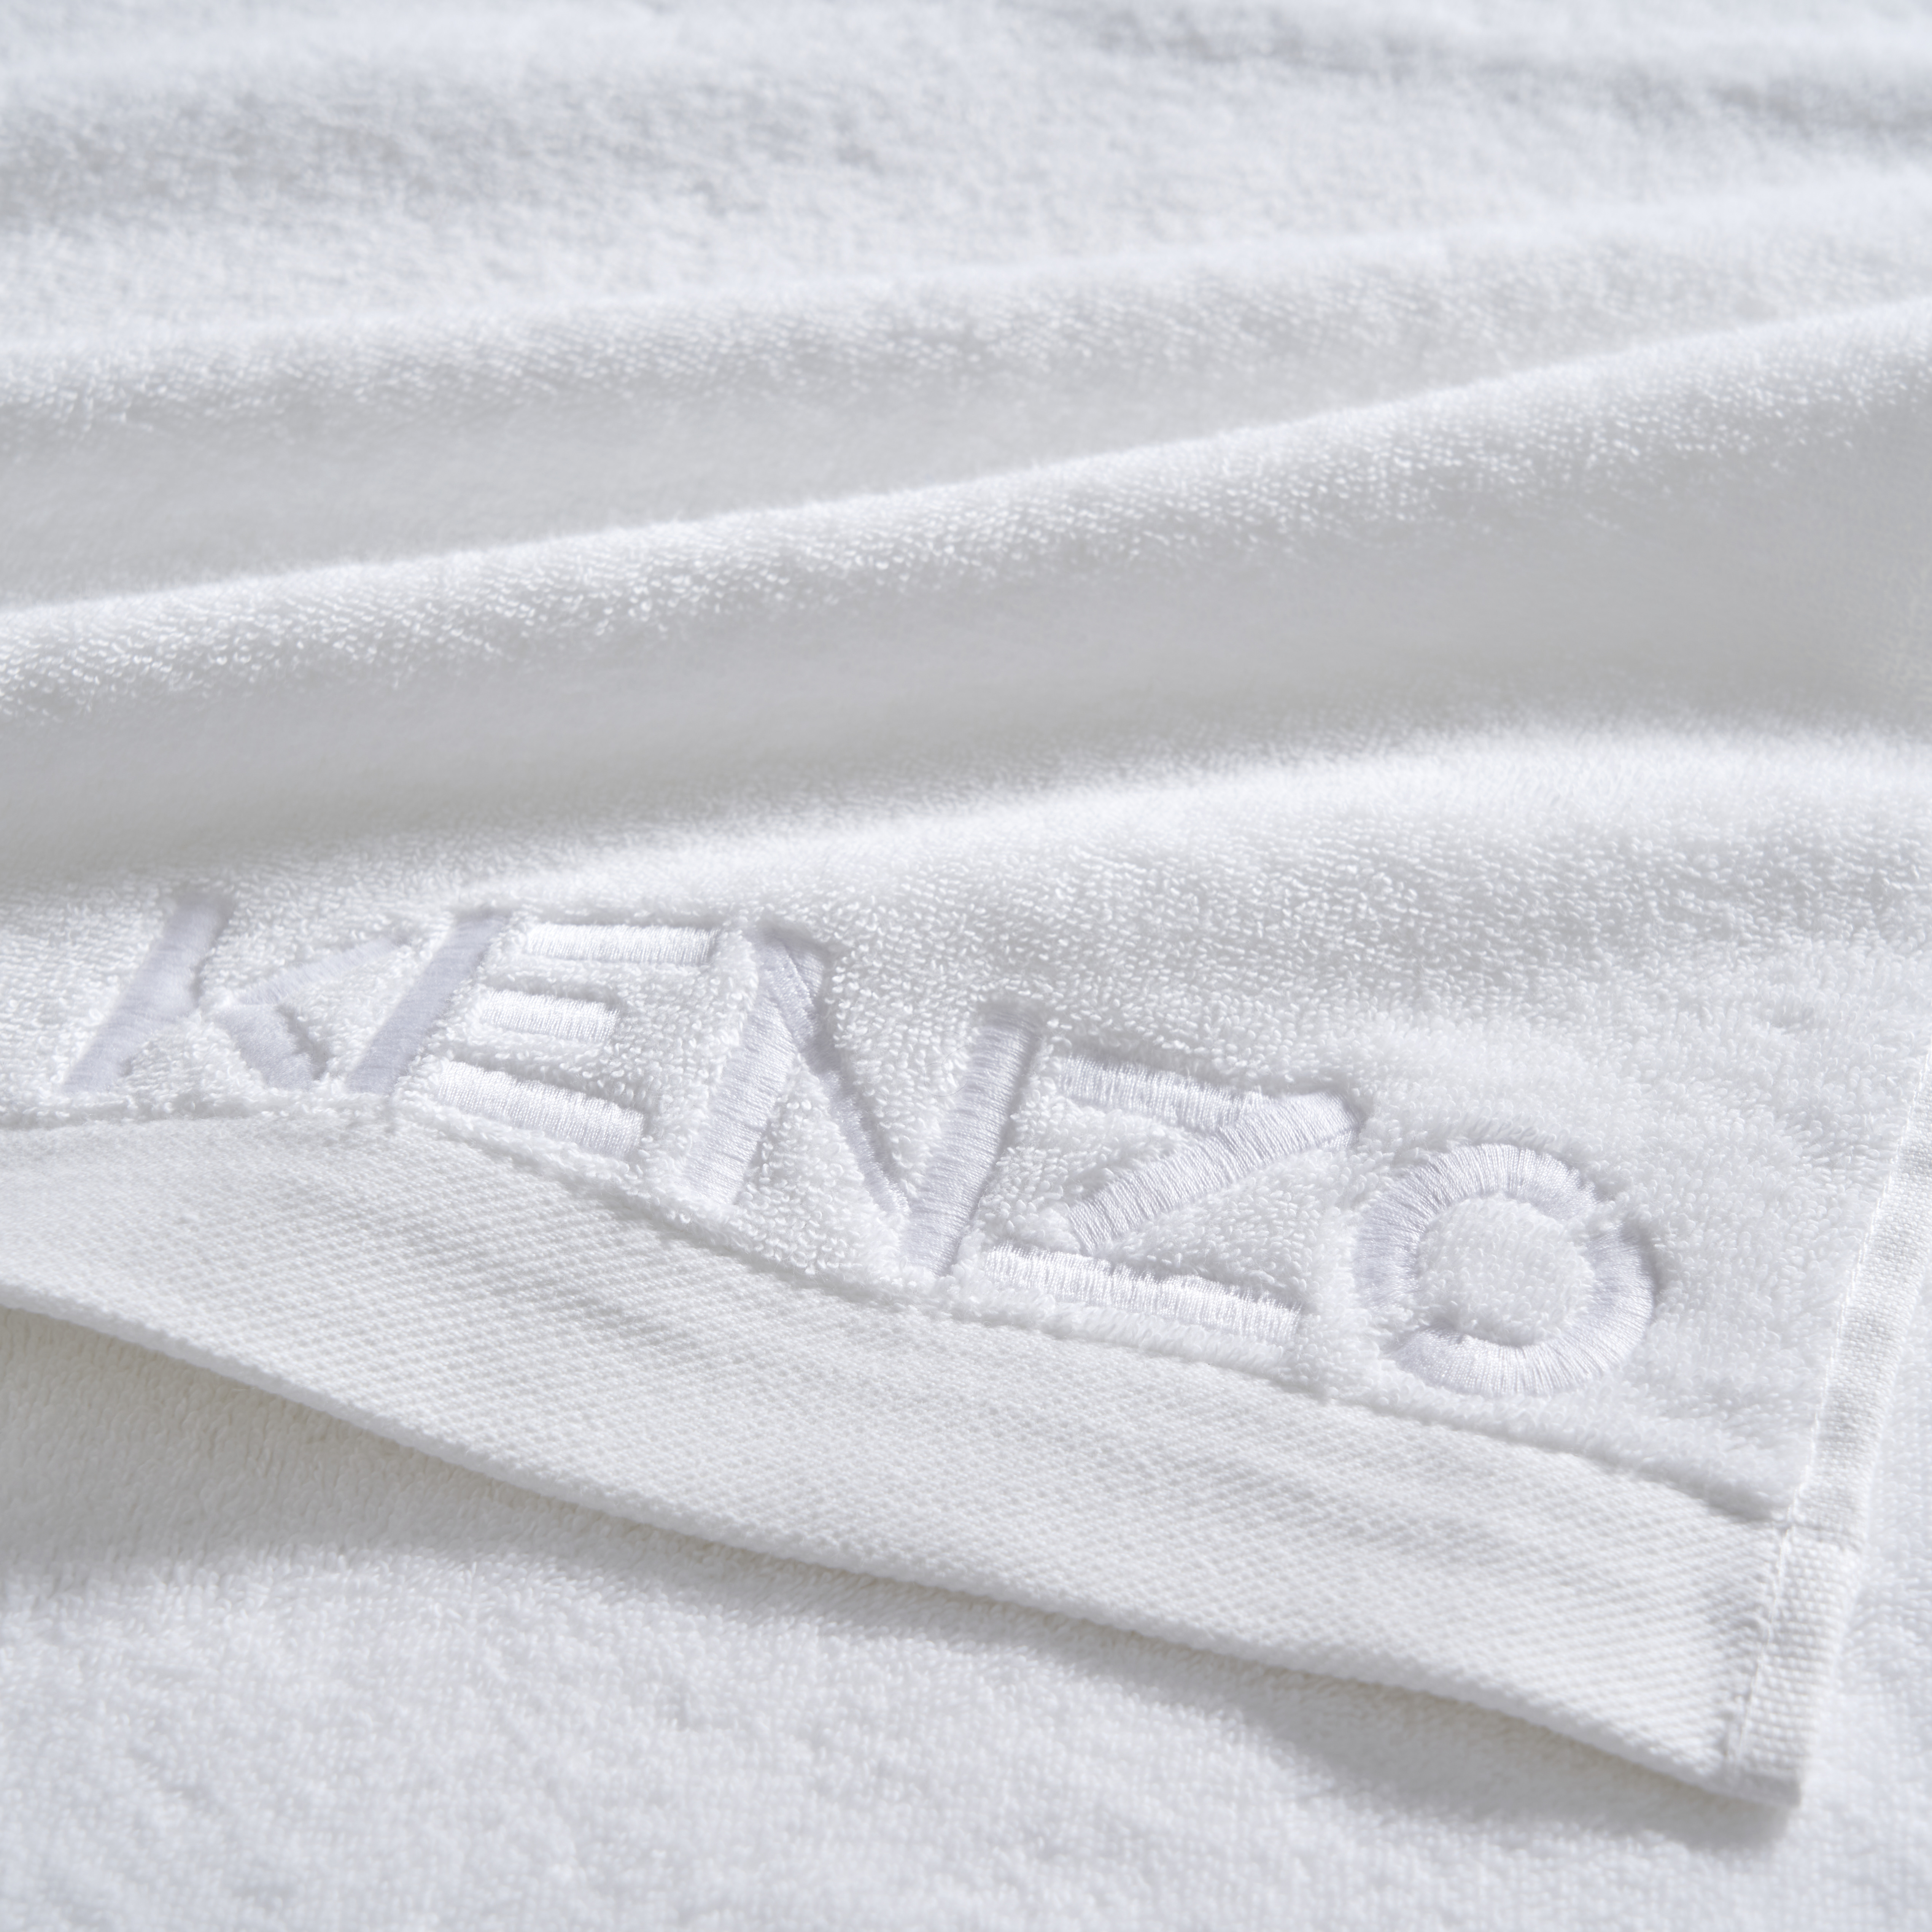 194862 - 2 - Towel Iconic Blanc - Kenzo.jpeg